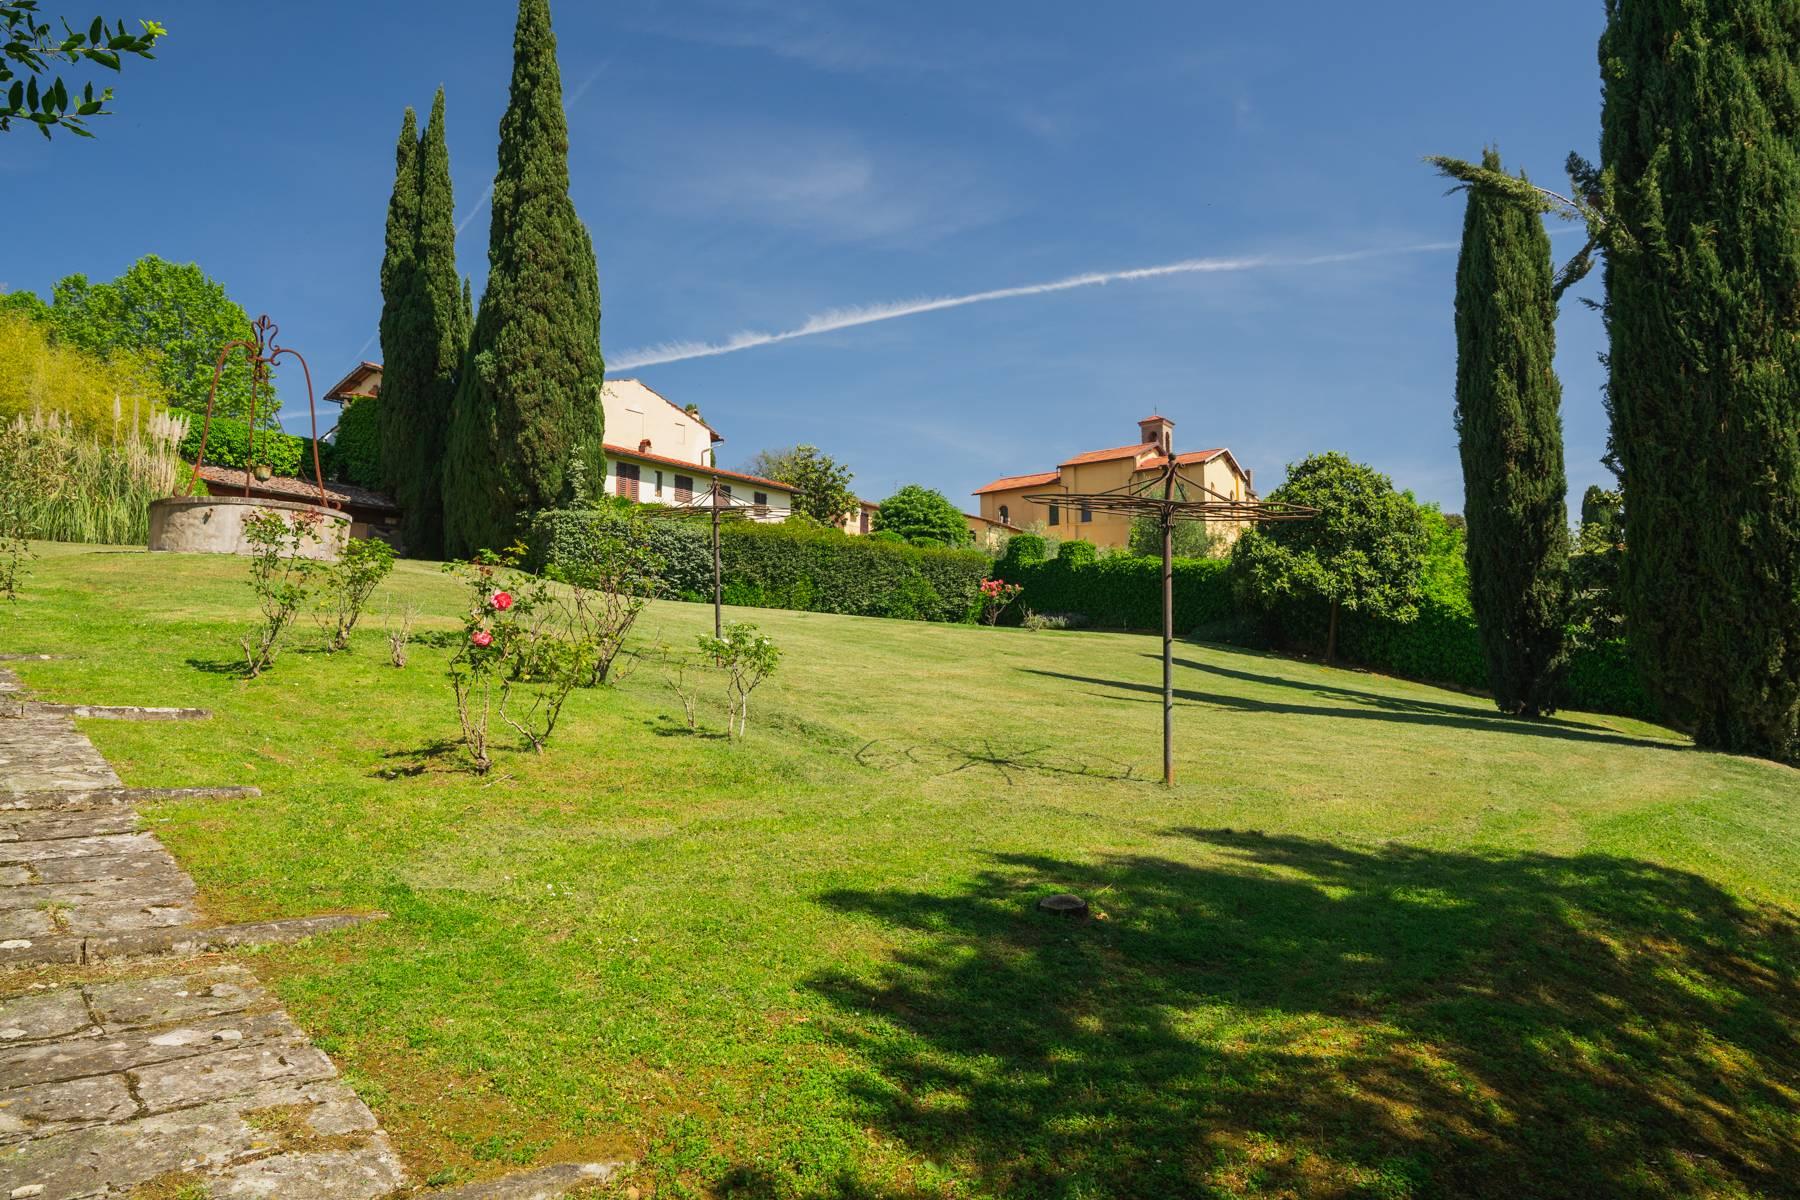 Elegante Villa aus dem 14. Jahrhundert mit einem Hektar Park in Florenz - 43